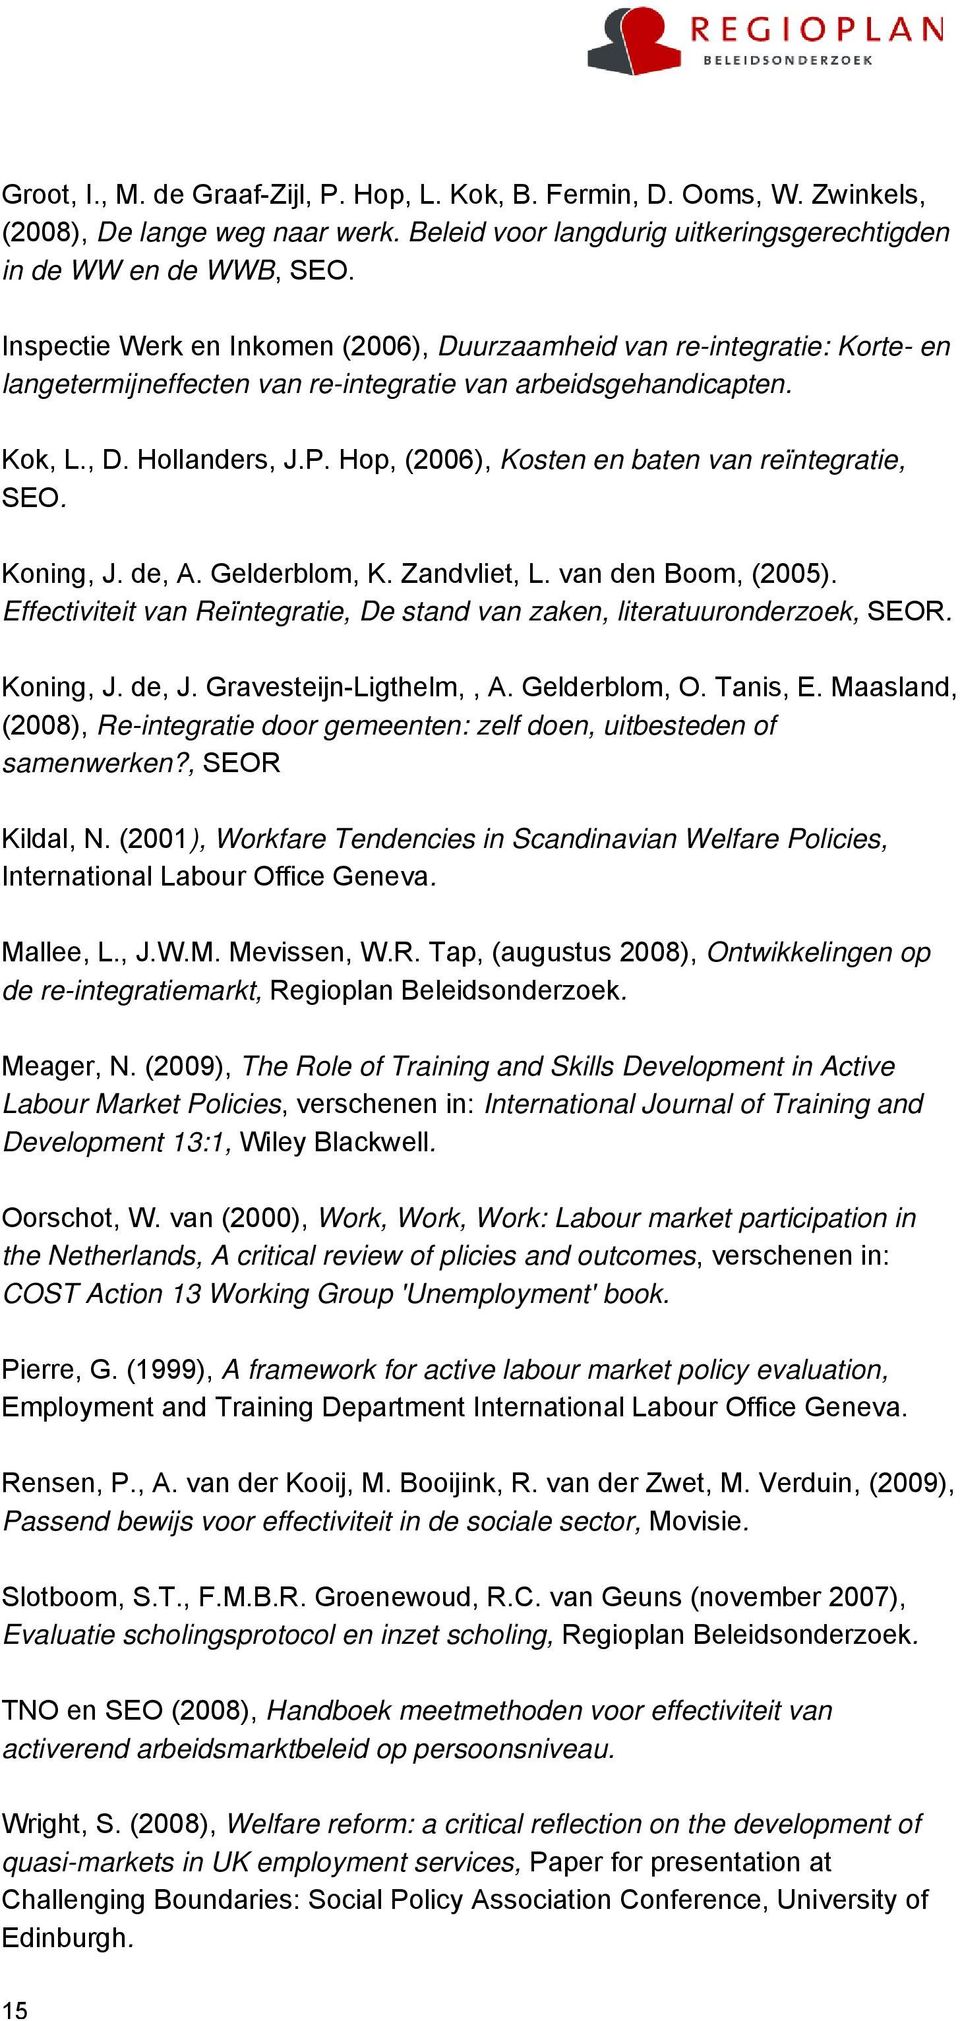 Hop, (2006), Kosten en baten van reïntegratie, SEO. Koning, J. de, A. Gelderblom, K. Zandvliet, L. van den Boom, (2005). Effectiviteit van Reïntegratie, De stand van zaken, literatuuronderzoek, SEOR.